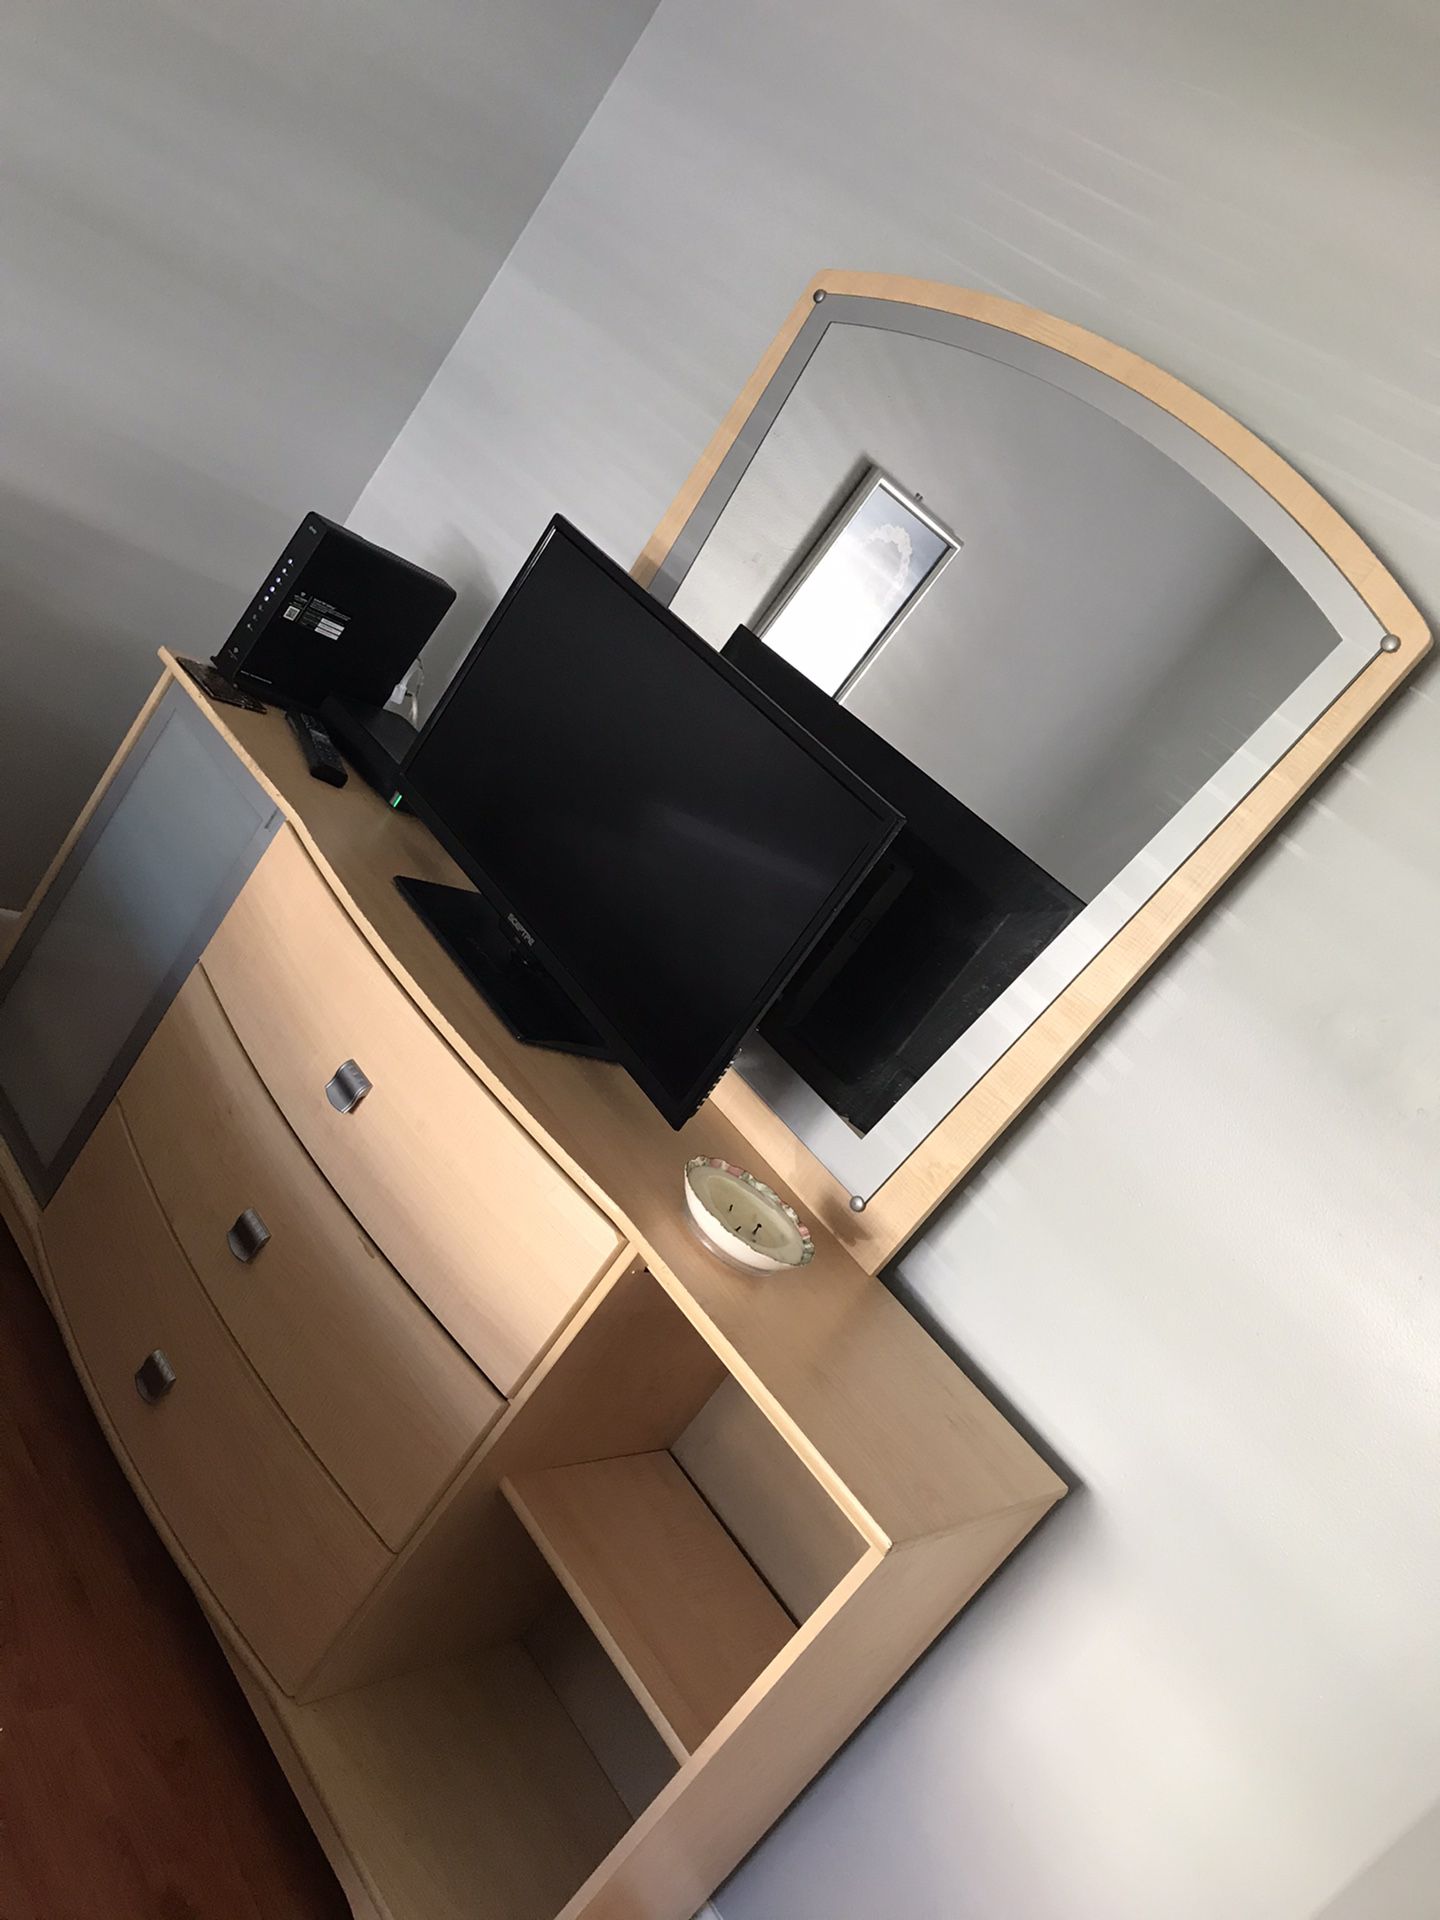 Bedroom dresser with mirror